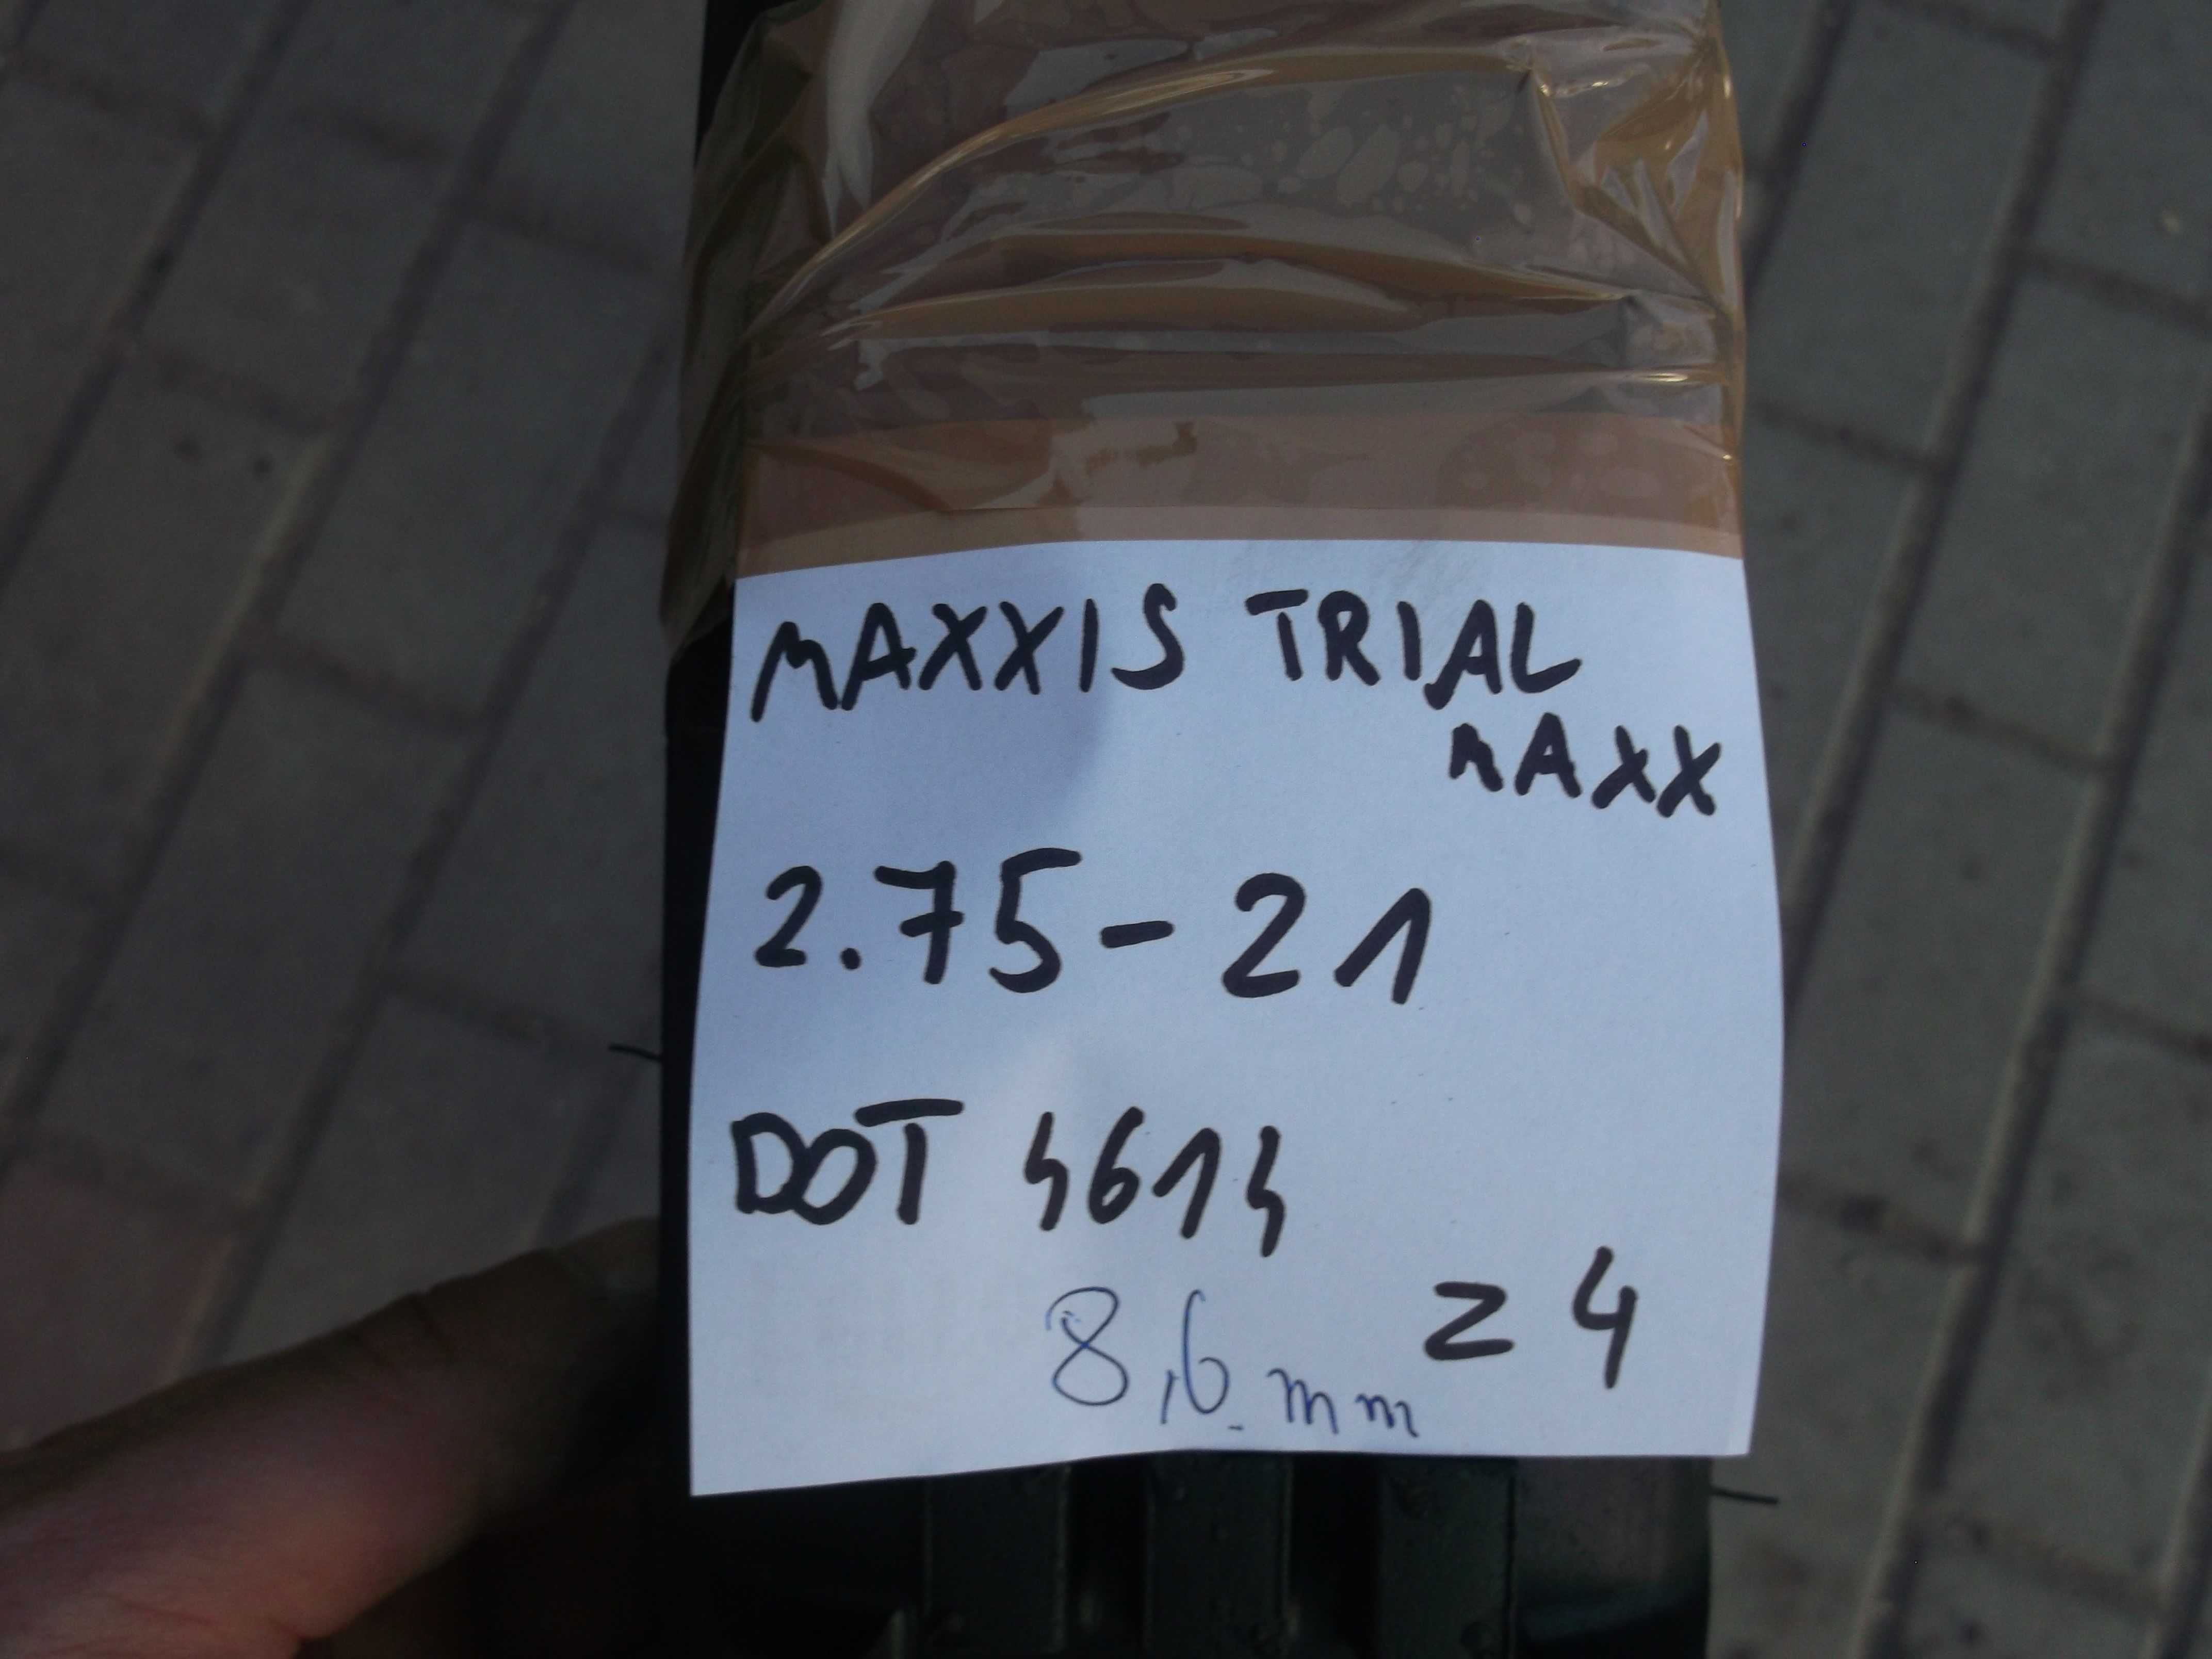 opona 2,75-21 Maxxis Trail Maxx	dot4614 8,6mm p. Nowa